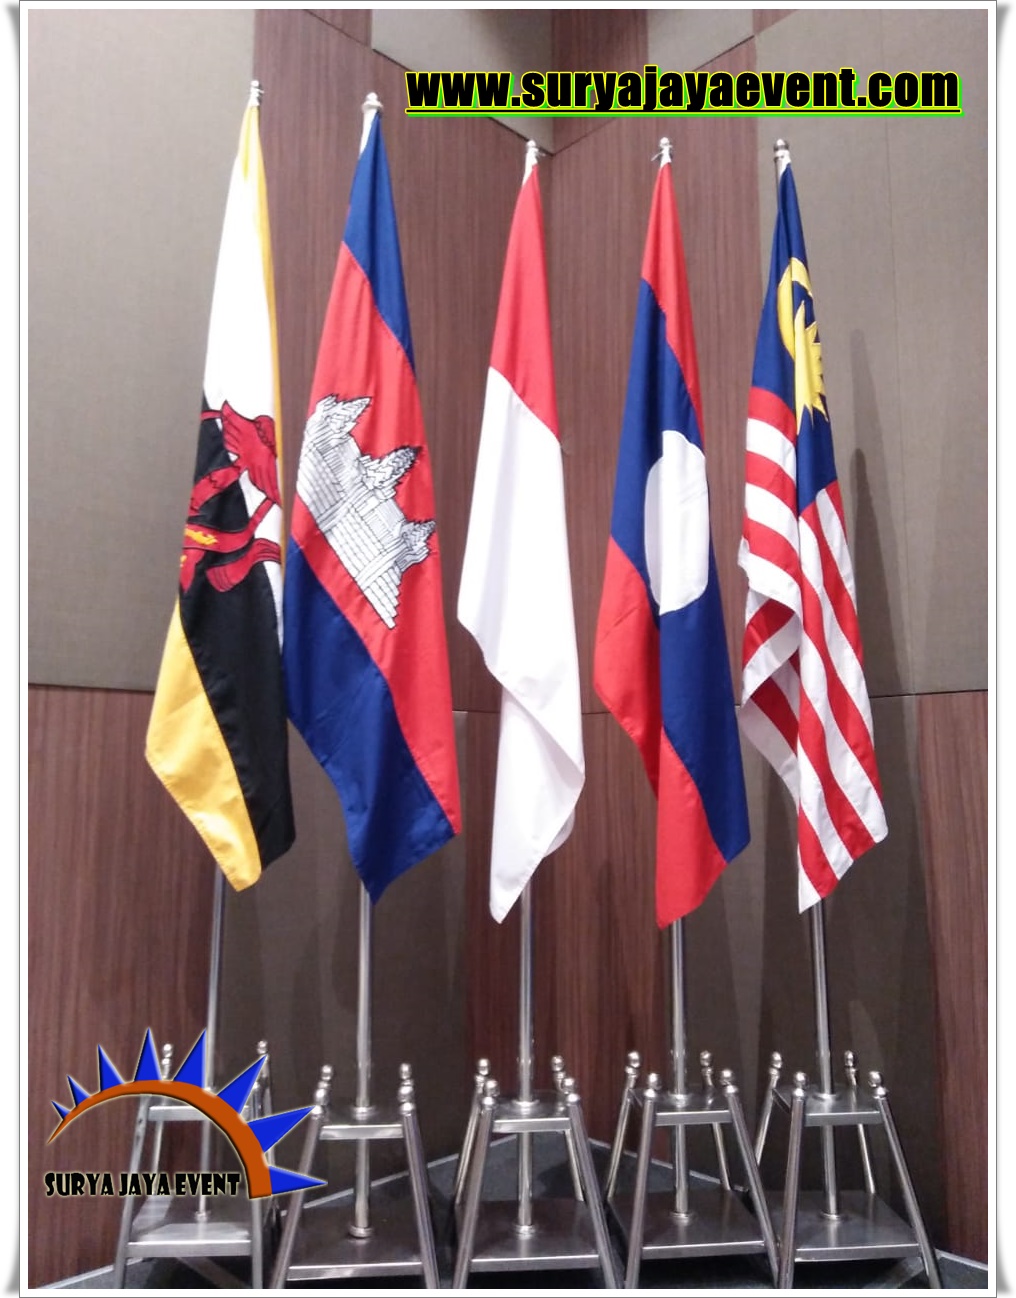 Sewa Tiang Bendera Untuk Acara Rapat 17 agustus Di Daerah Jakarta